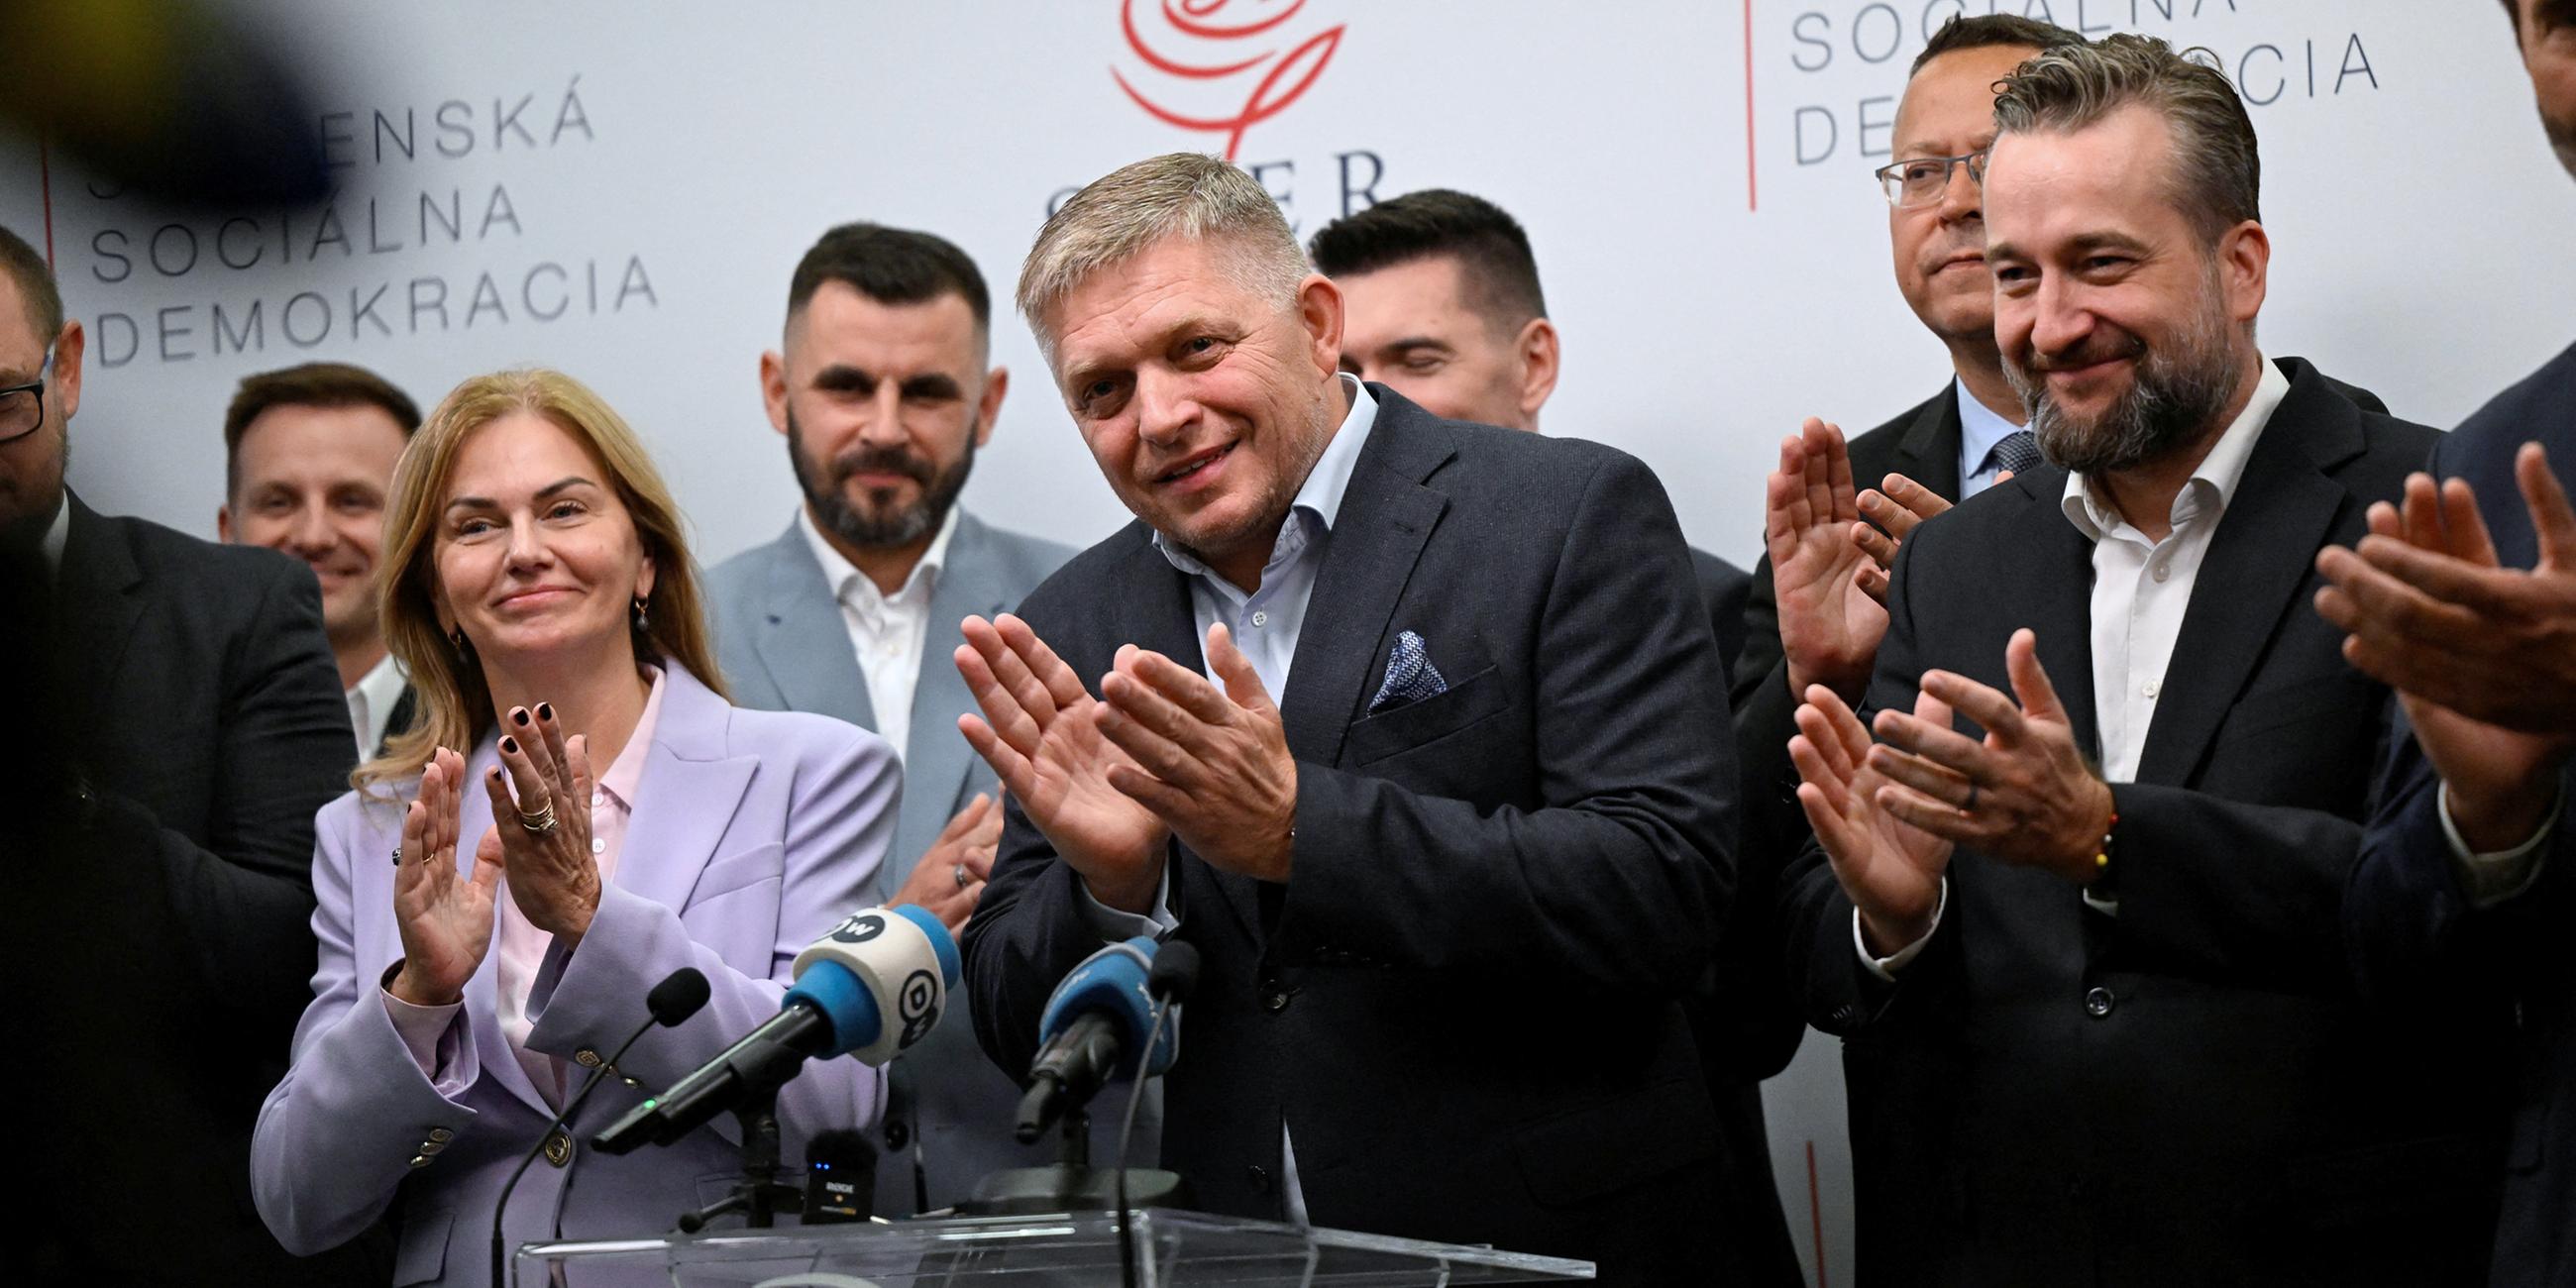 Früherer Ministerpräsident Robert Fico gewinnt Wahl in der Slowakei